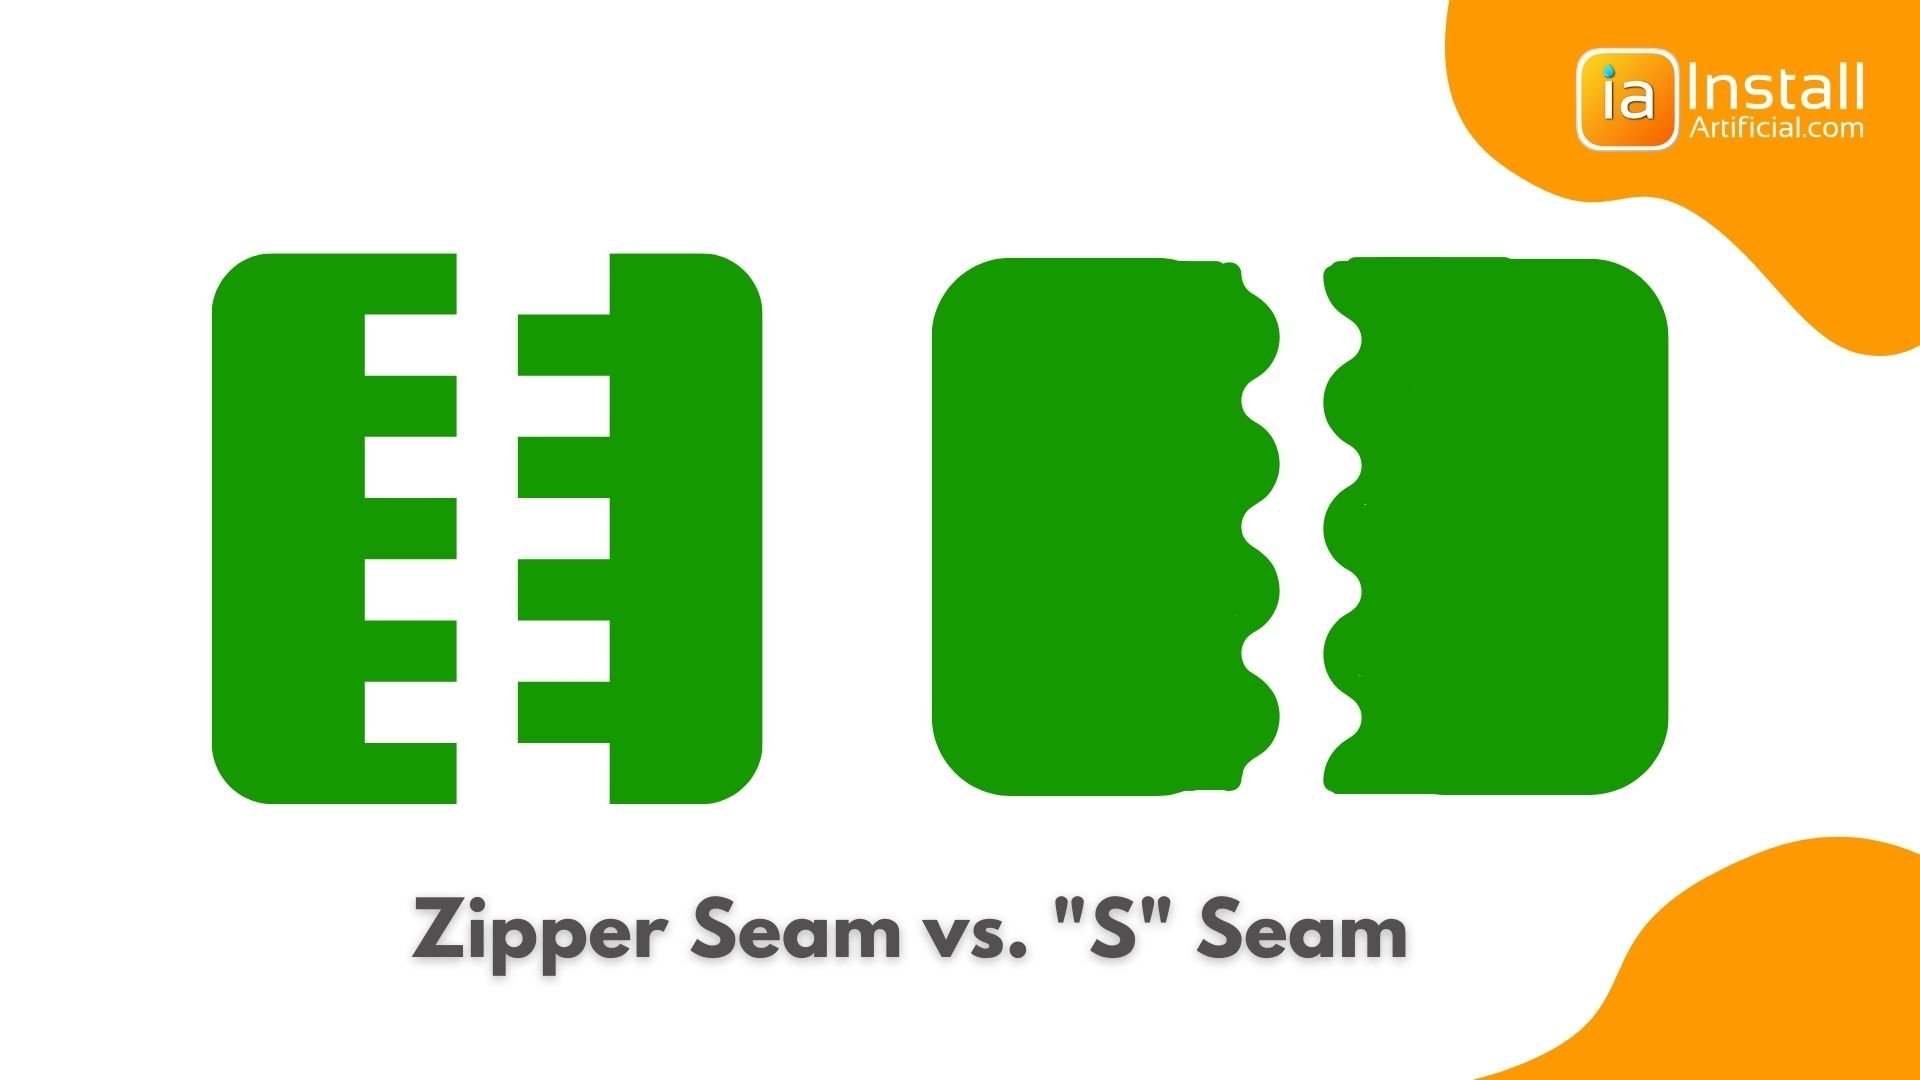 Zipper seam vs S seam